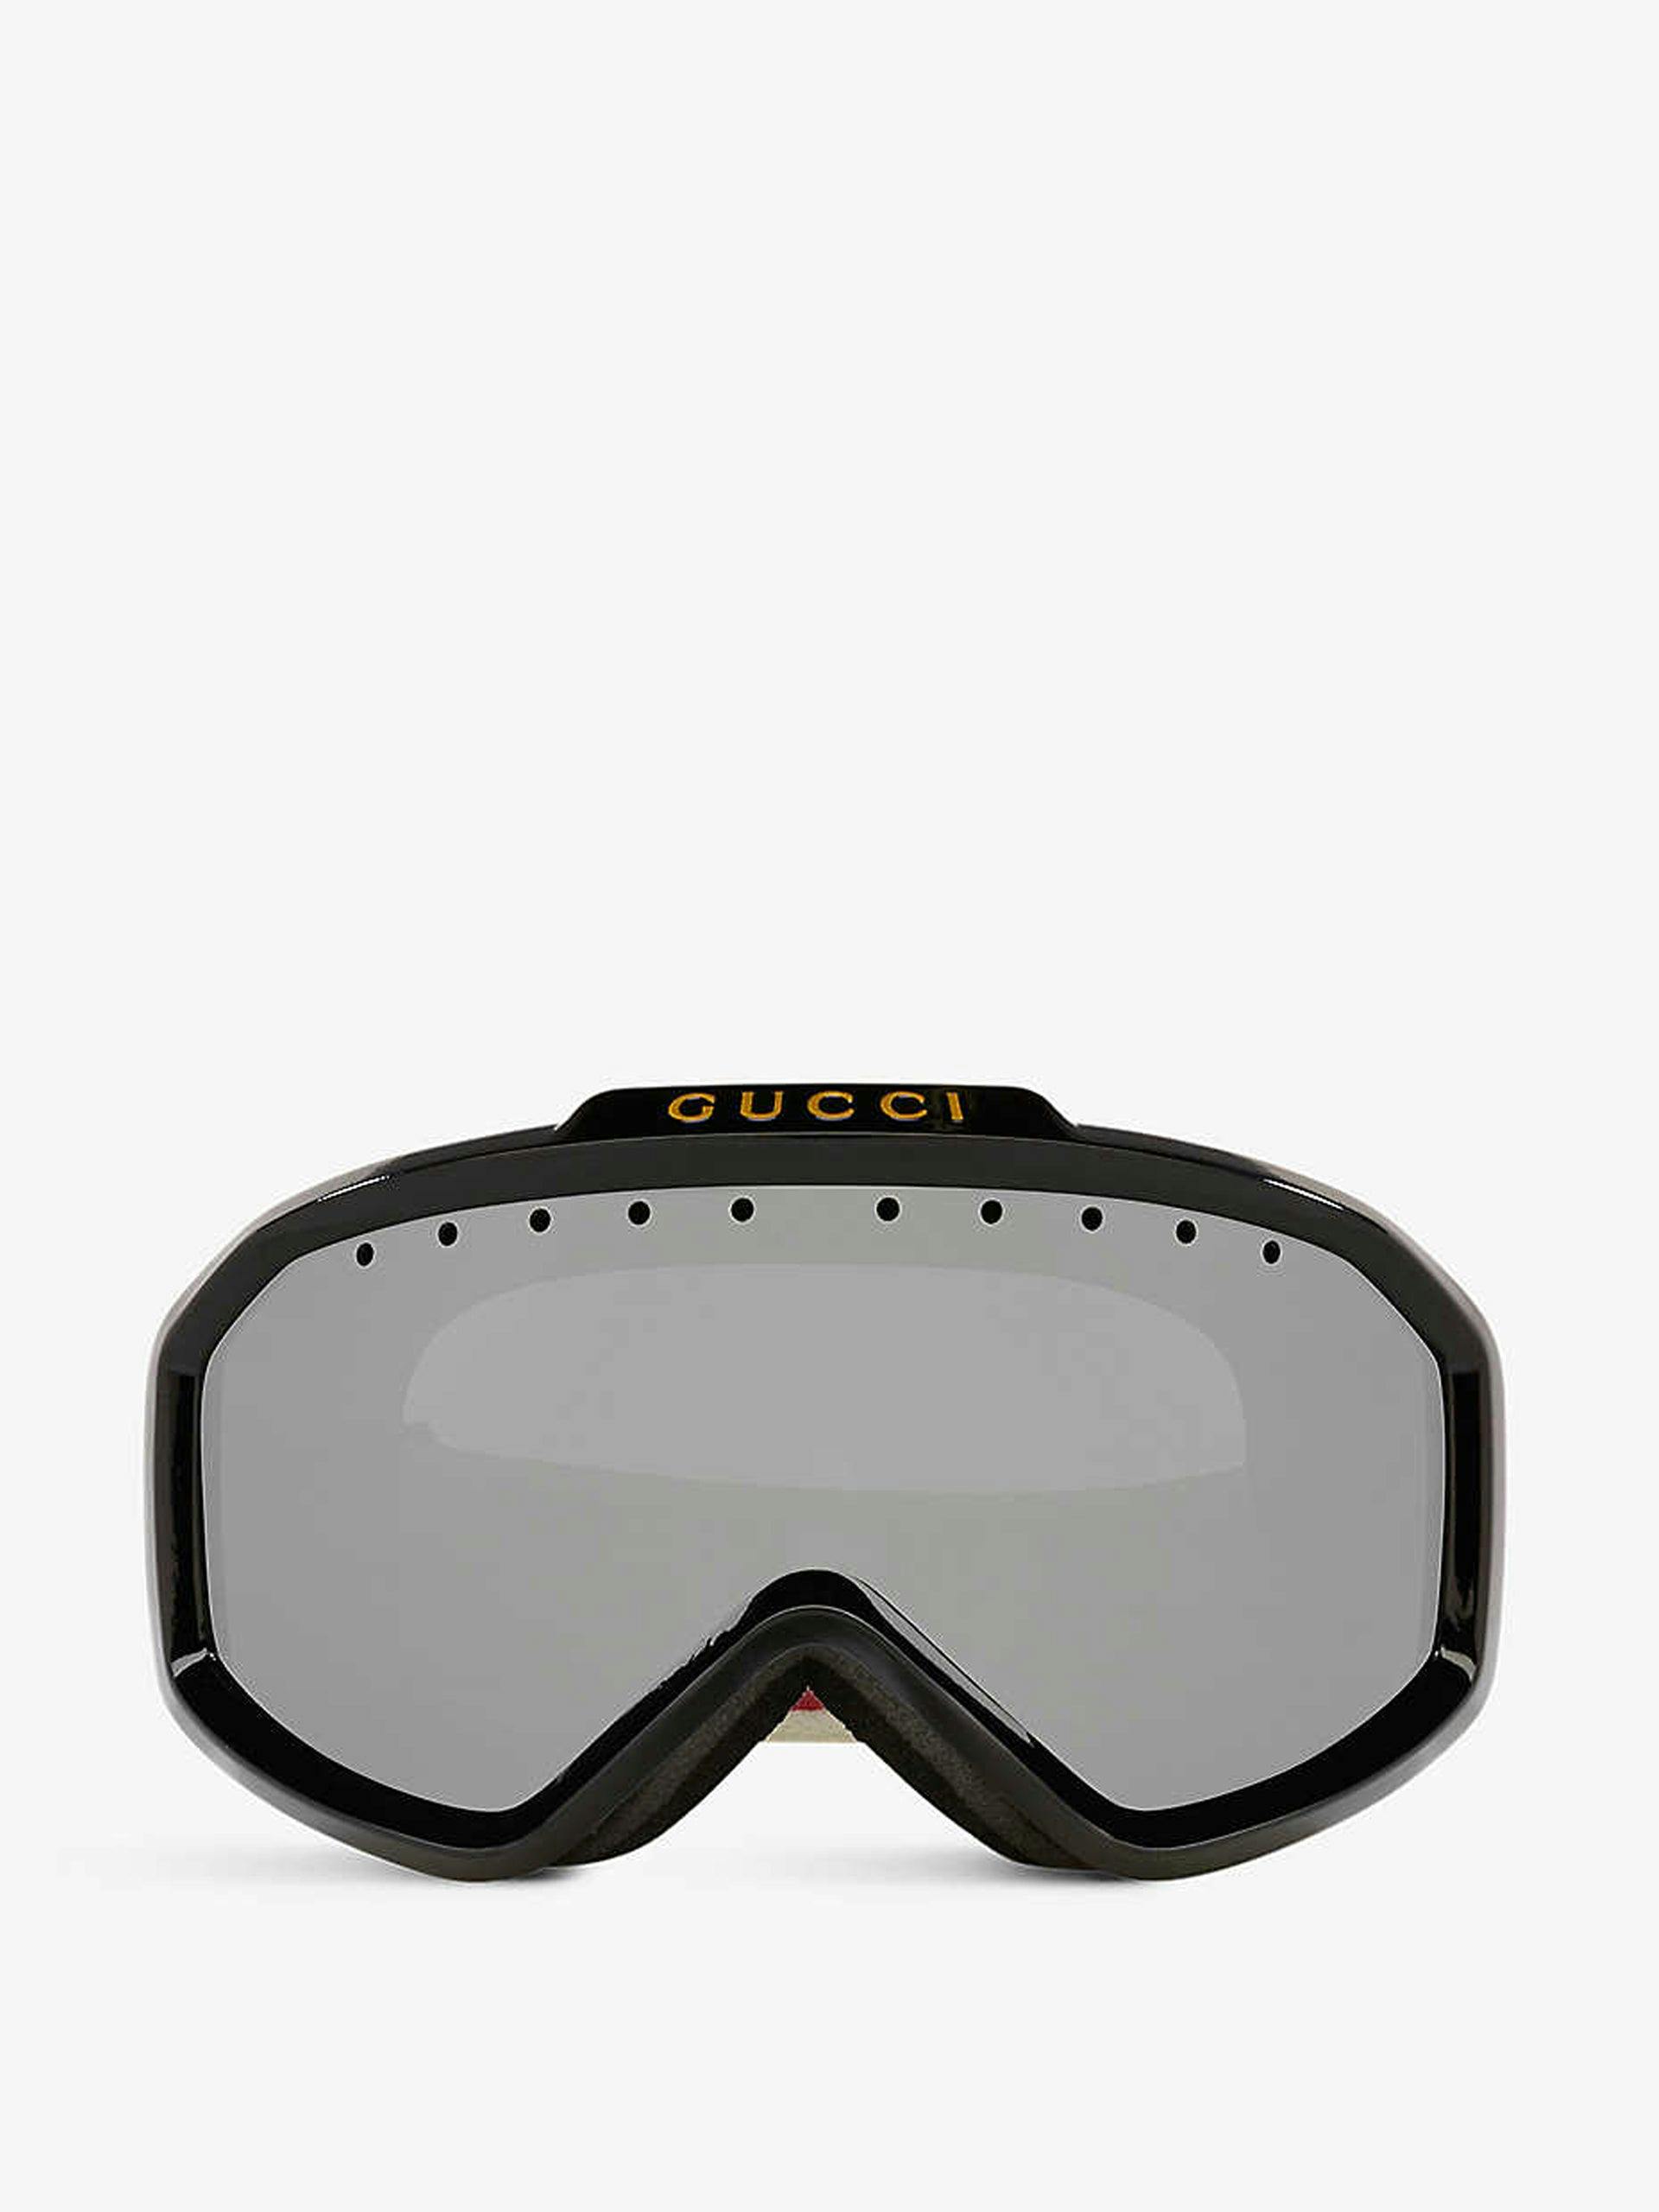 Branded strap ski goggles